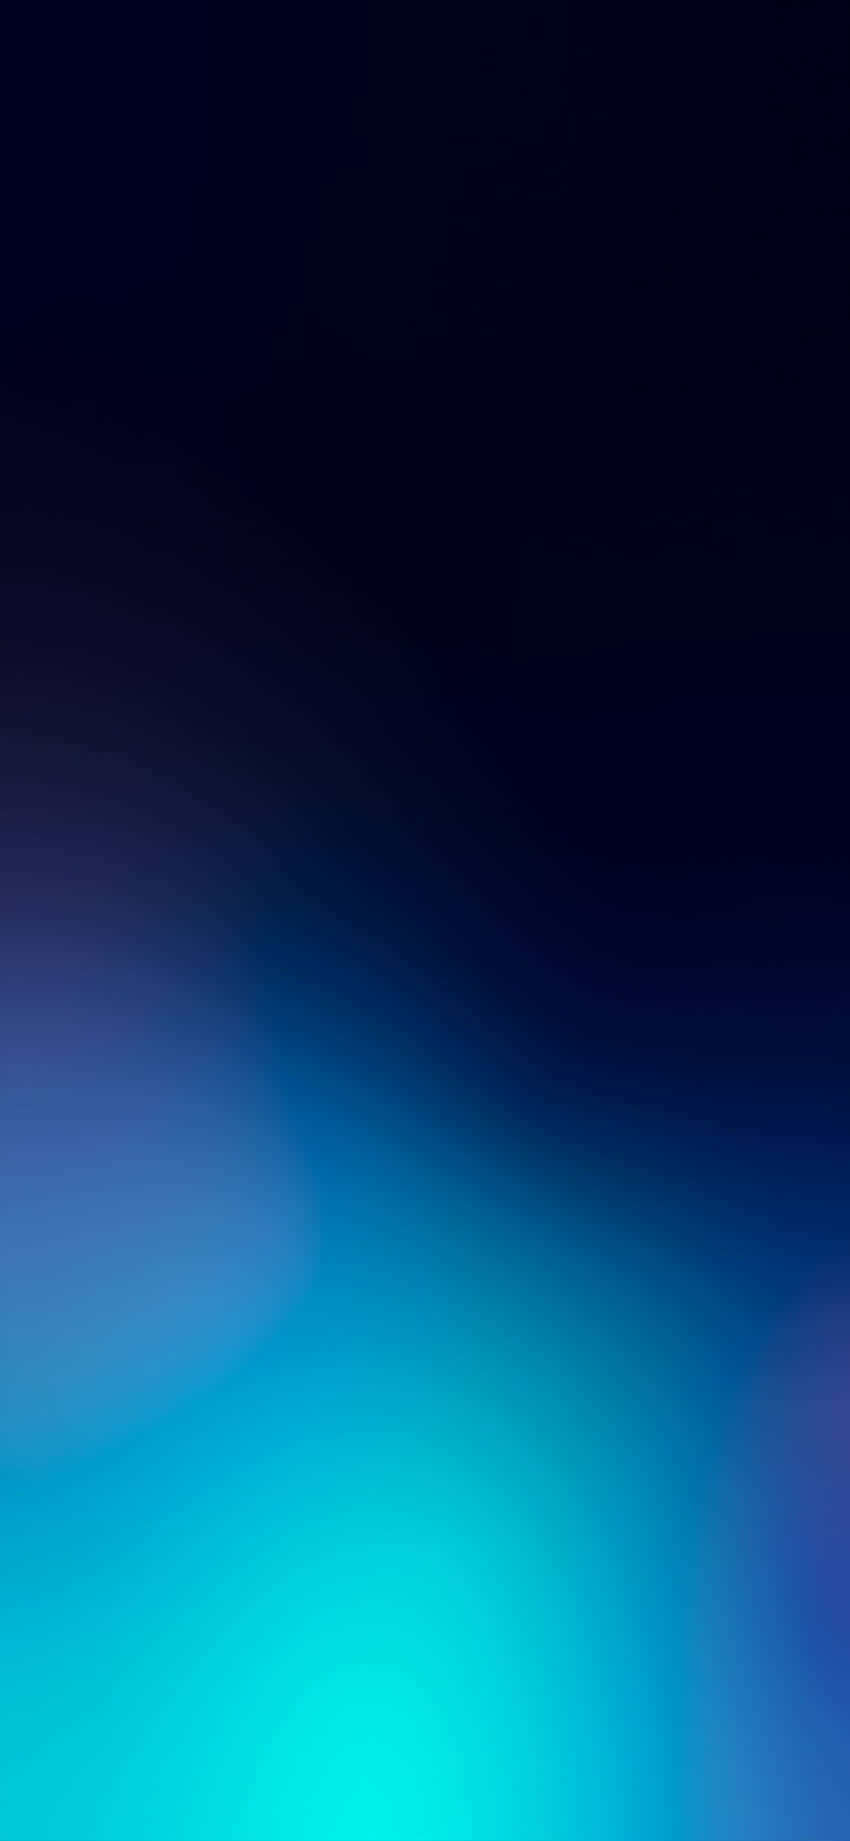 Dasverführerische Schwarze Und Blaue Iphone Wallpaper